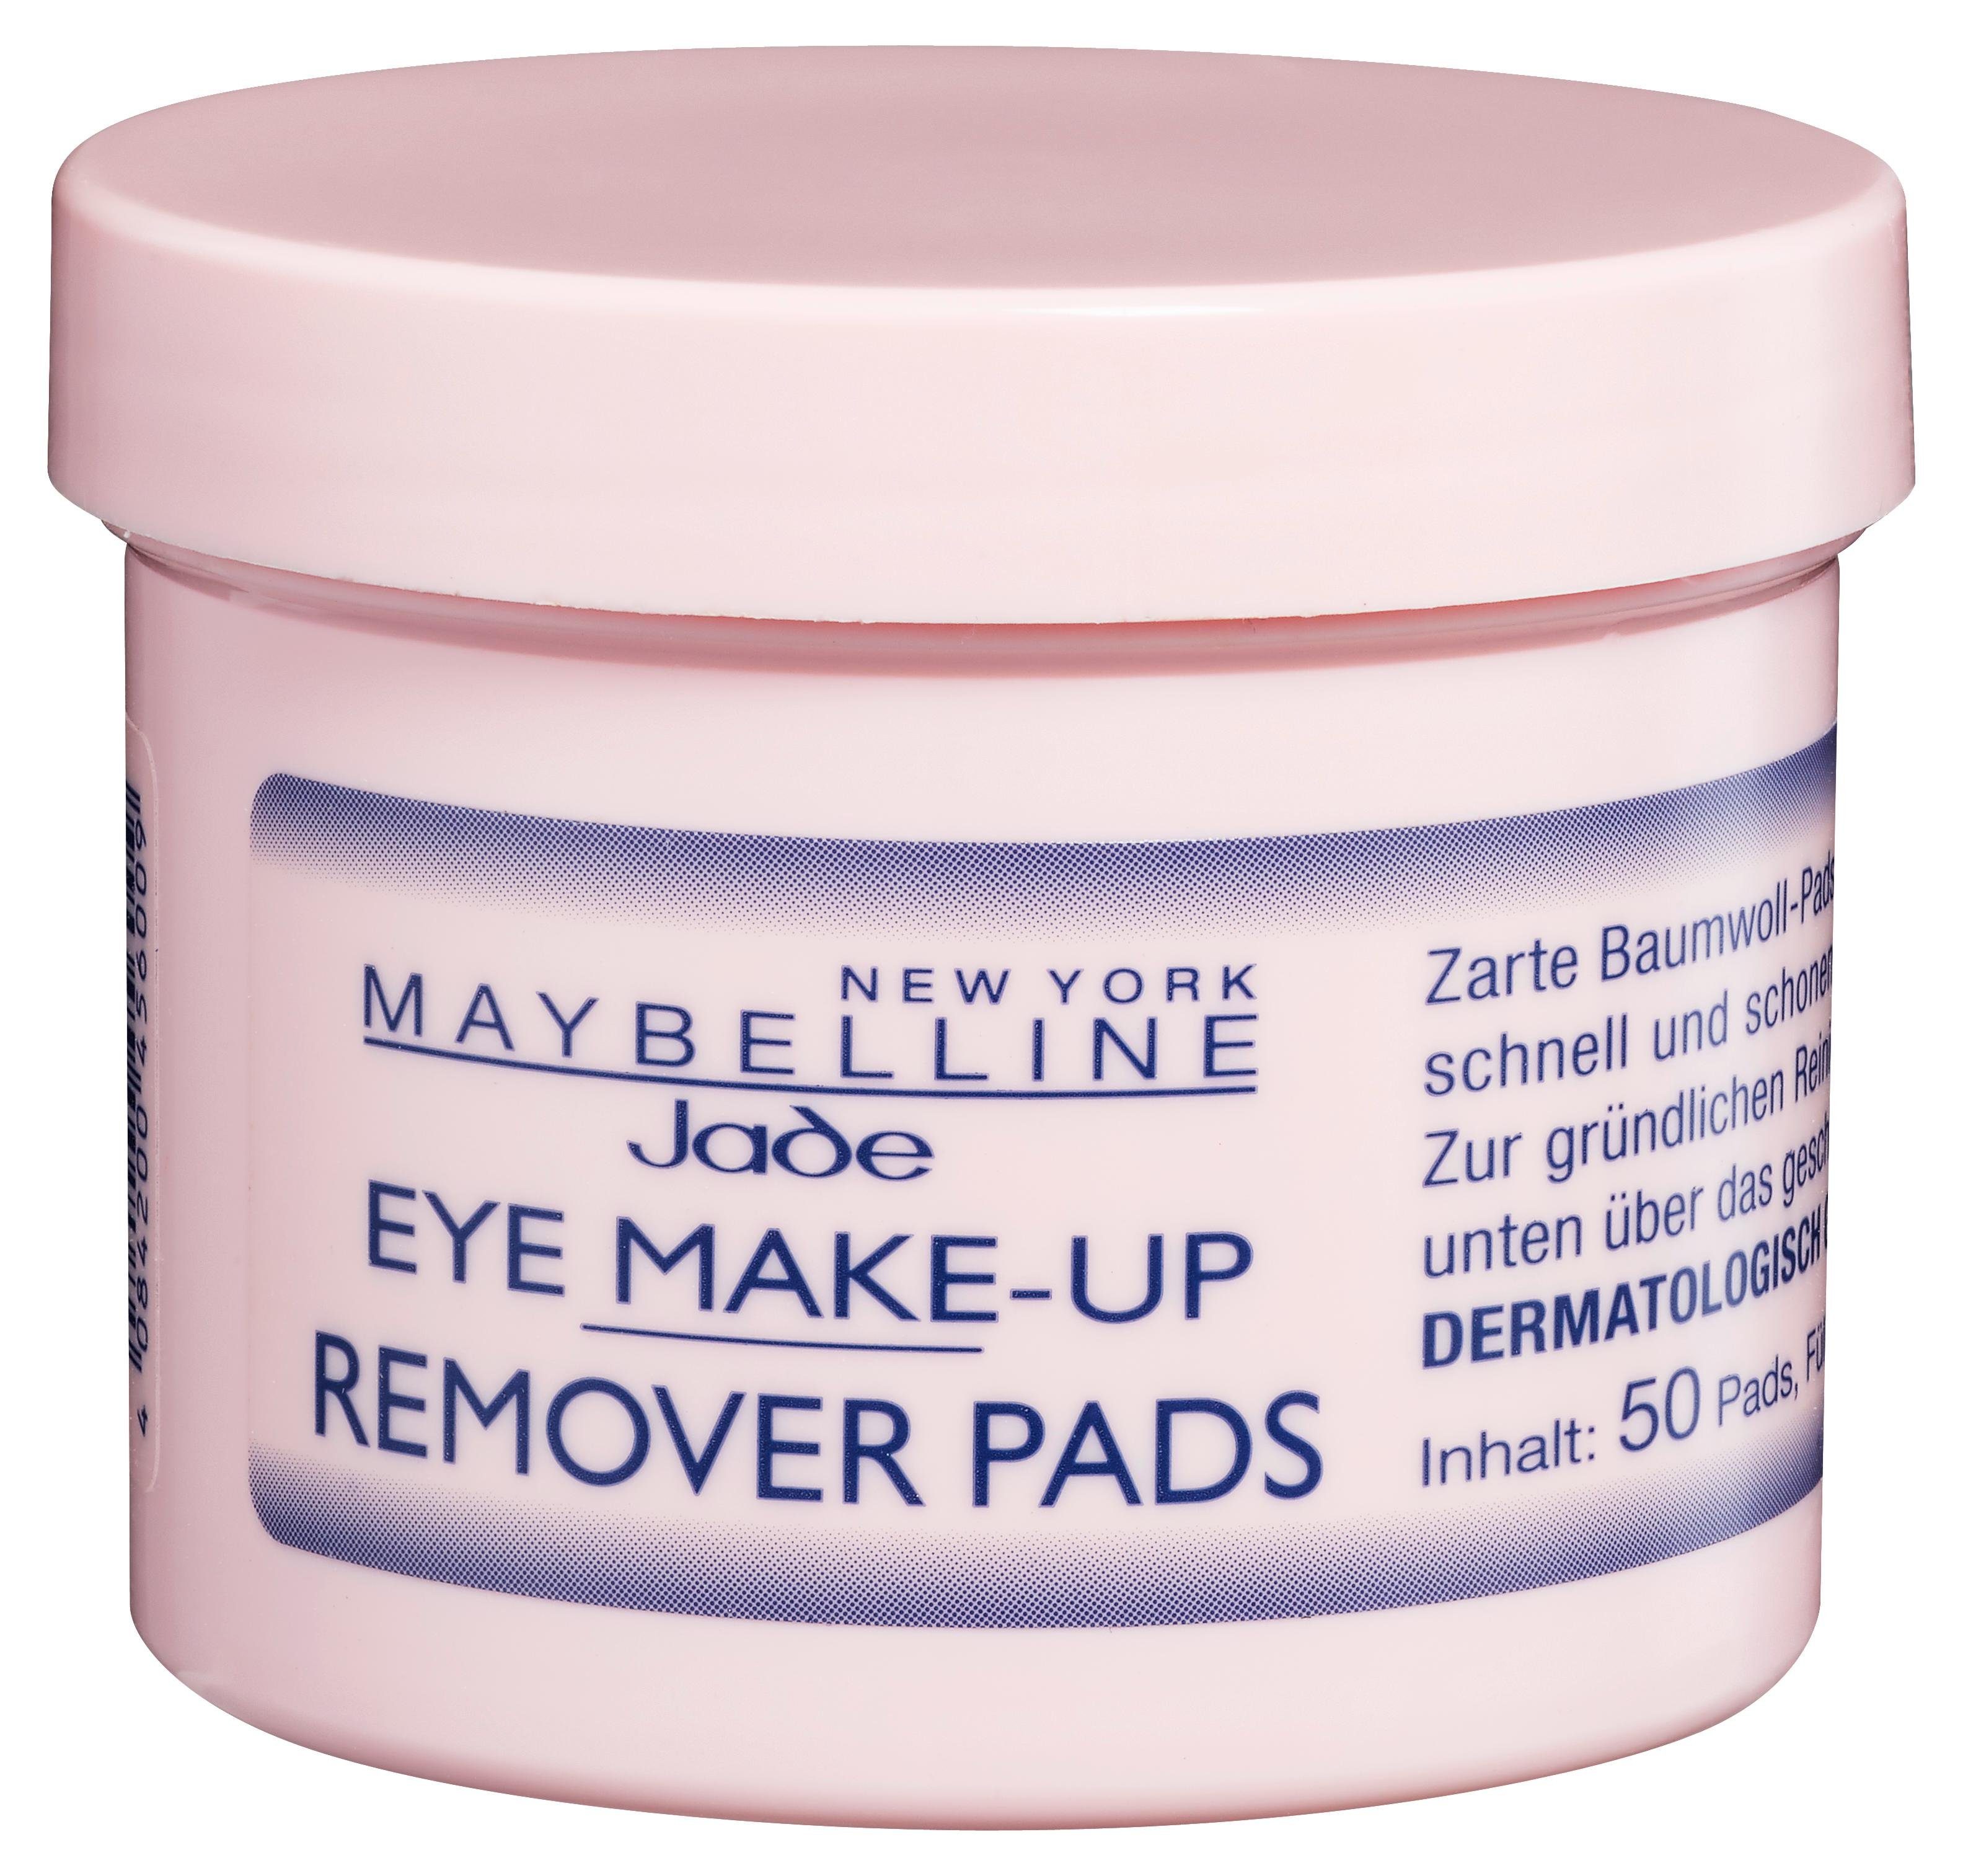 Eye Pads YORK Make-Up NEW Remover MAYBELLINE Augen-Make-up-Entferner